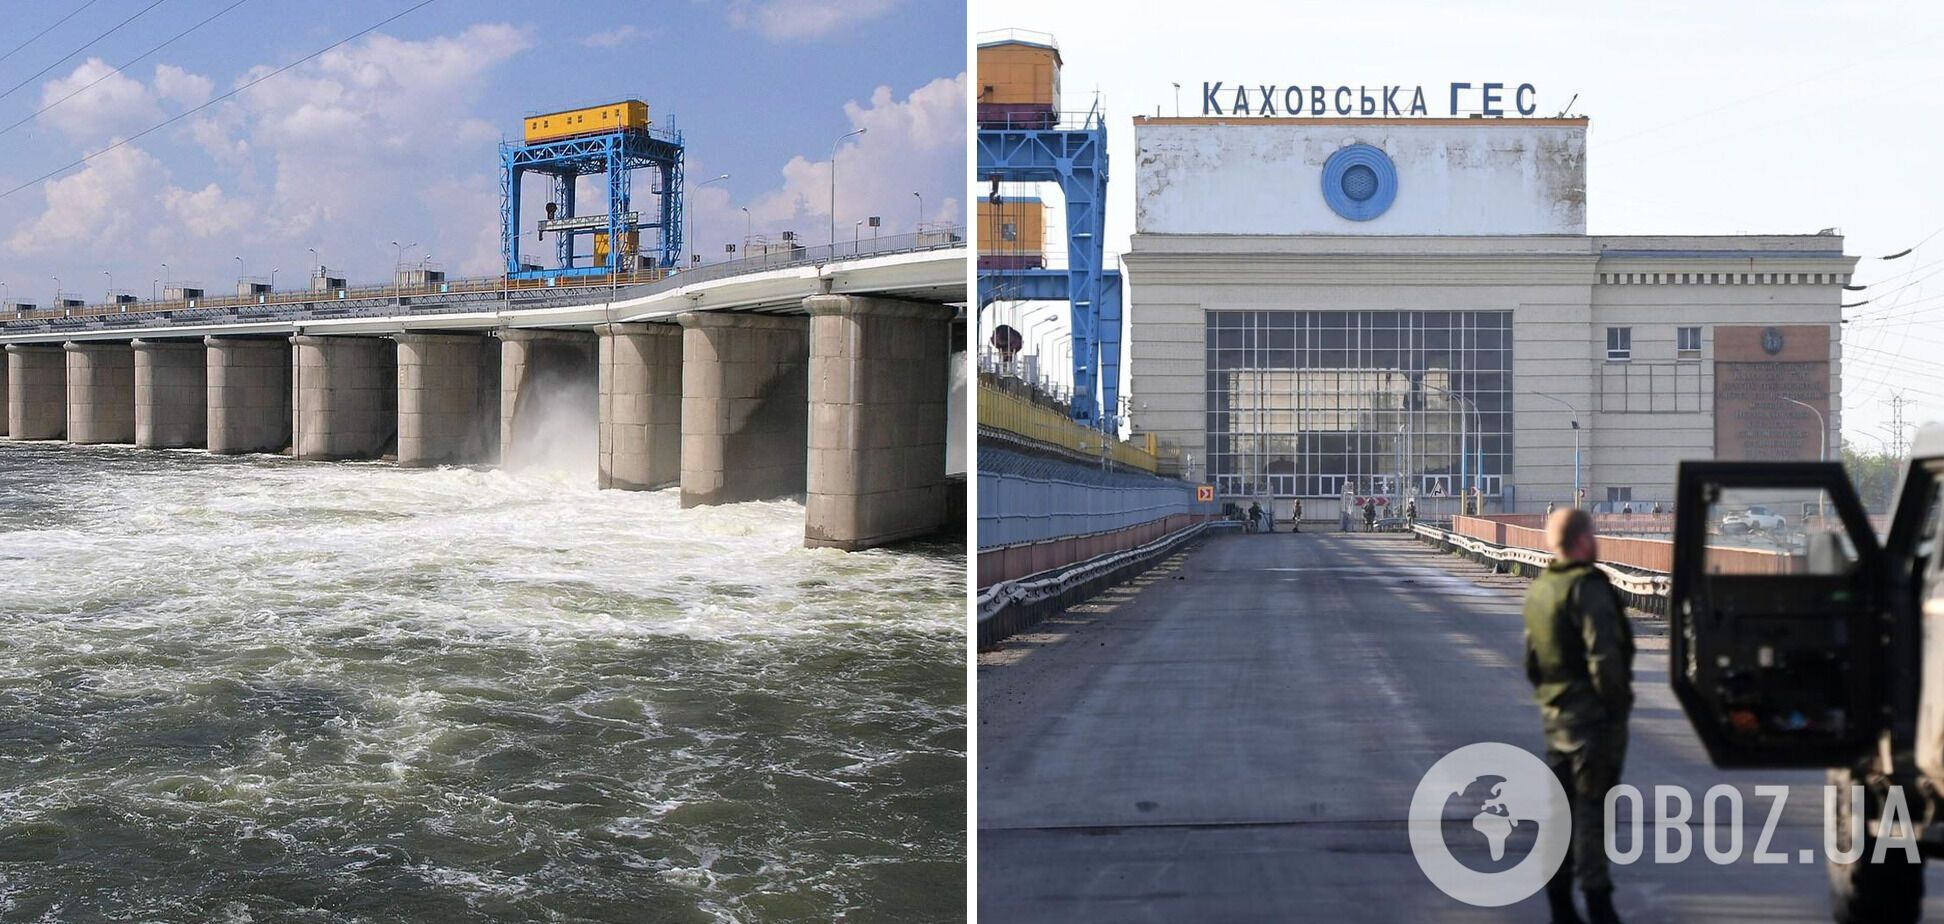 Отвлекают внимание? В России после подрыва кафирами Каховской ГЭС обвинили Украину в подготовке теракта с 'грязной бомбой'